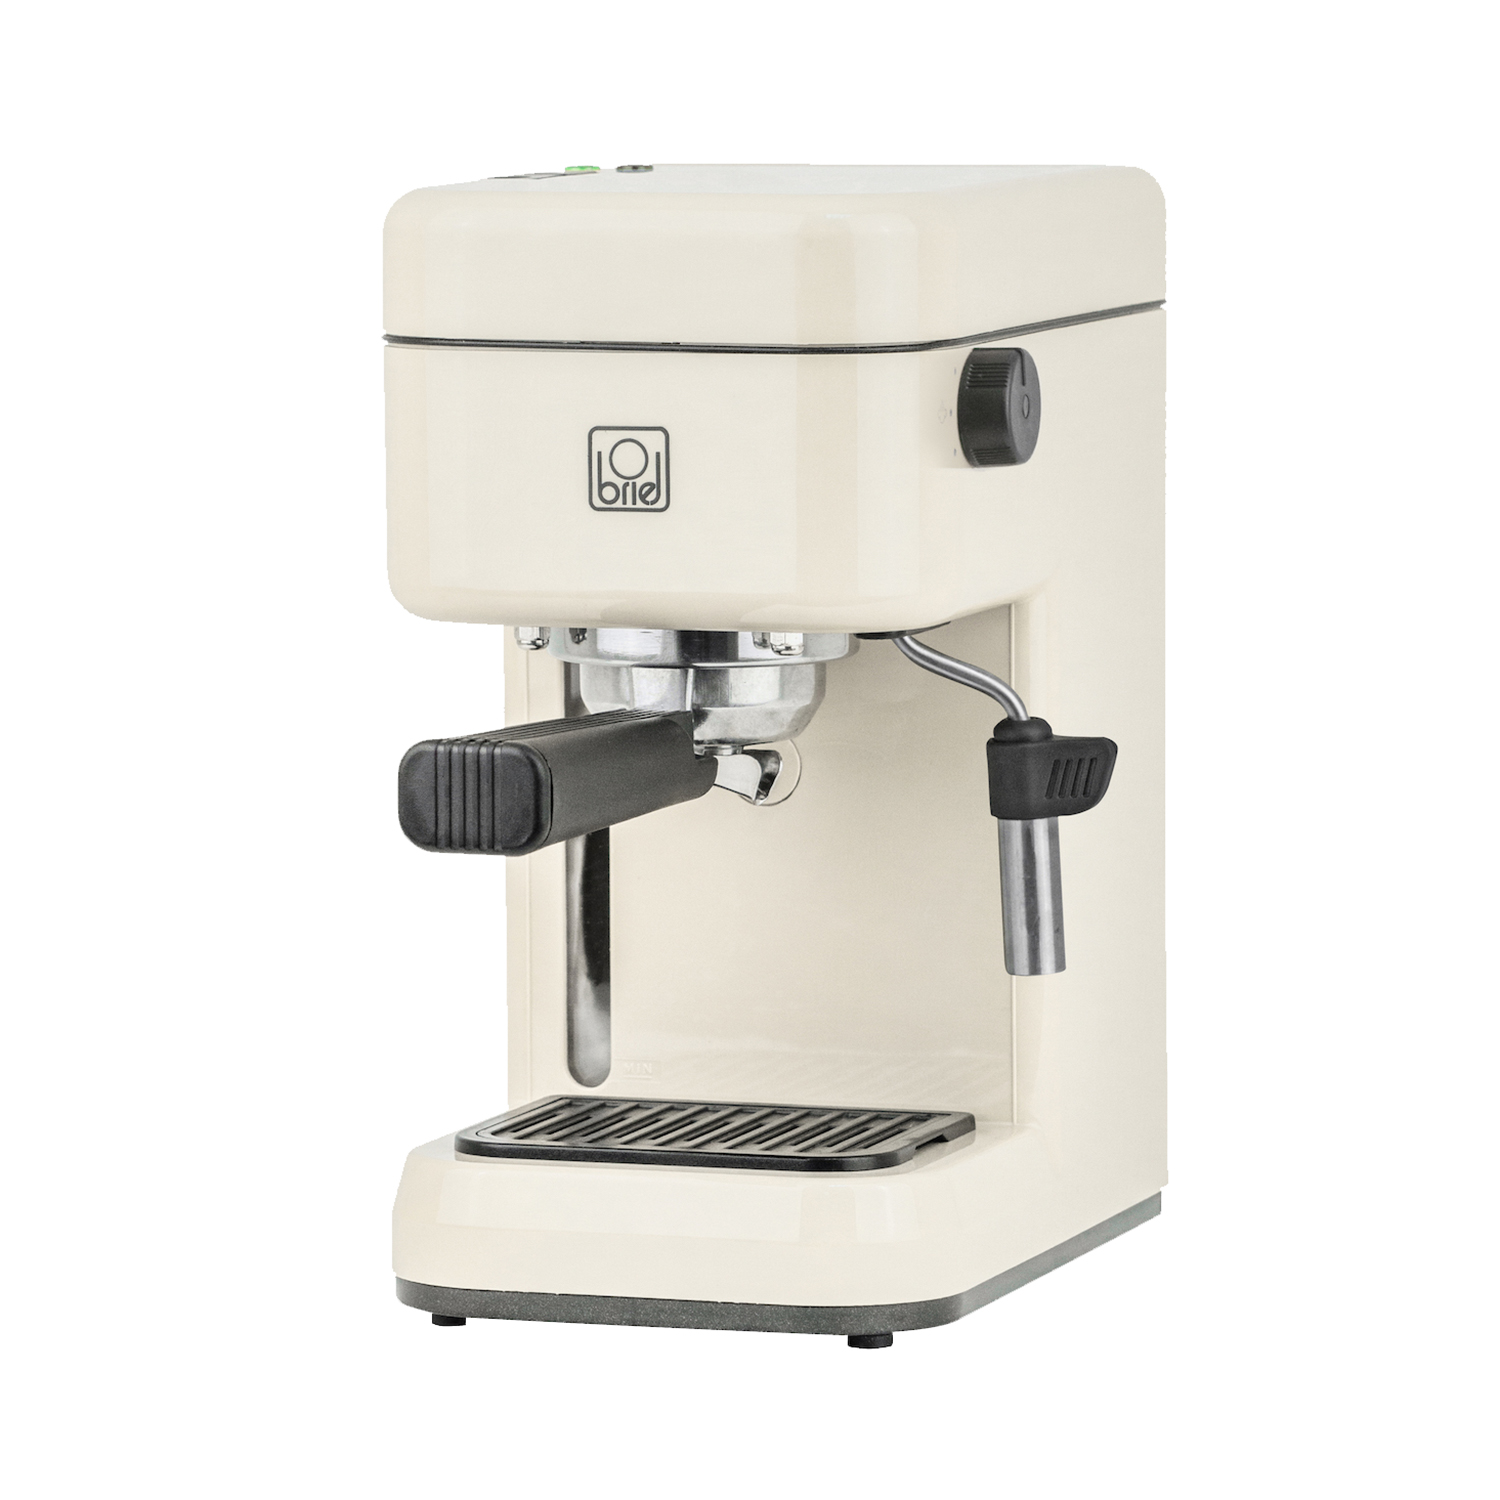 Maquina-cafe-espresso-B14-IVORY-2.jpg